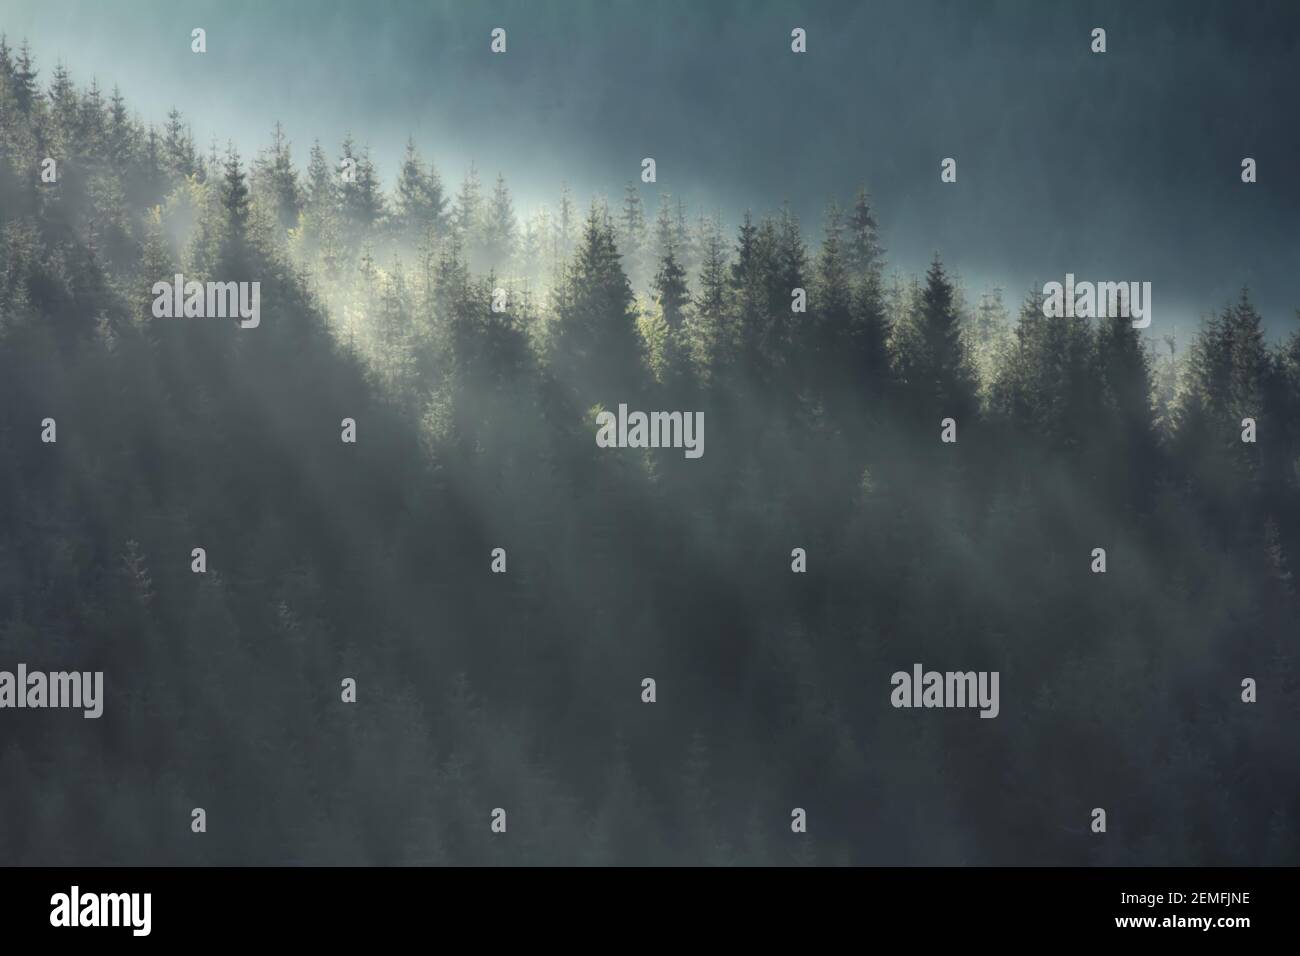 Dunkle geheimnisvolle Wälder auf hohen Hügeln Landschaft, neblige Waldlandschaft mit Nebel; Farbfoto. Stockfoto